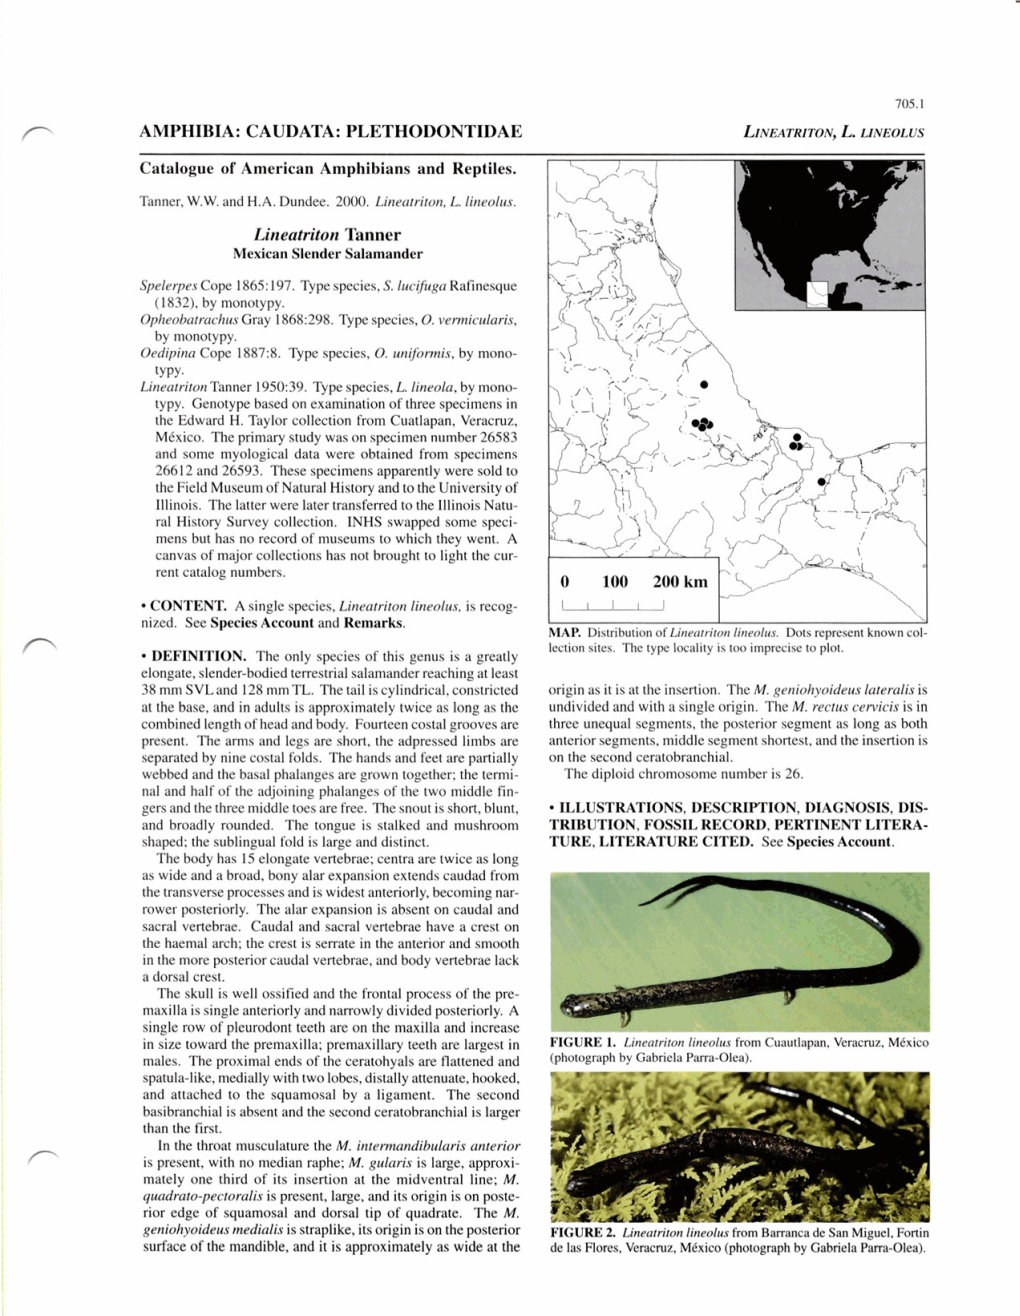 AMPHIBIA: CAUDATA: PLETHODONTIDAE Lineatriton